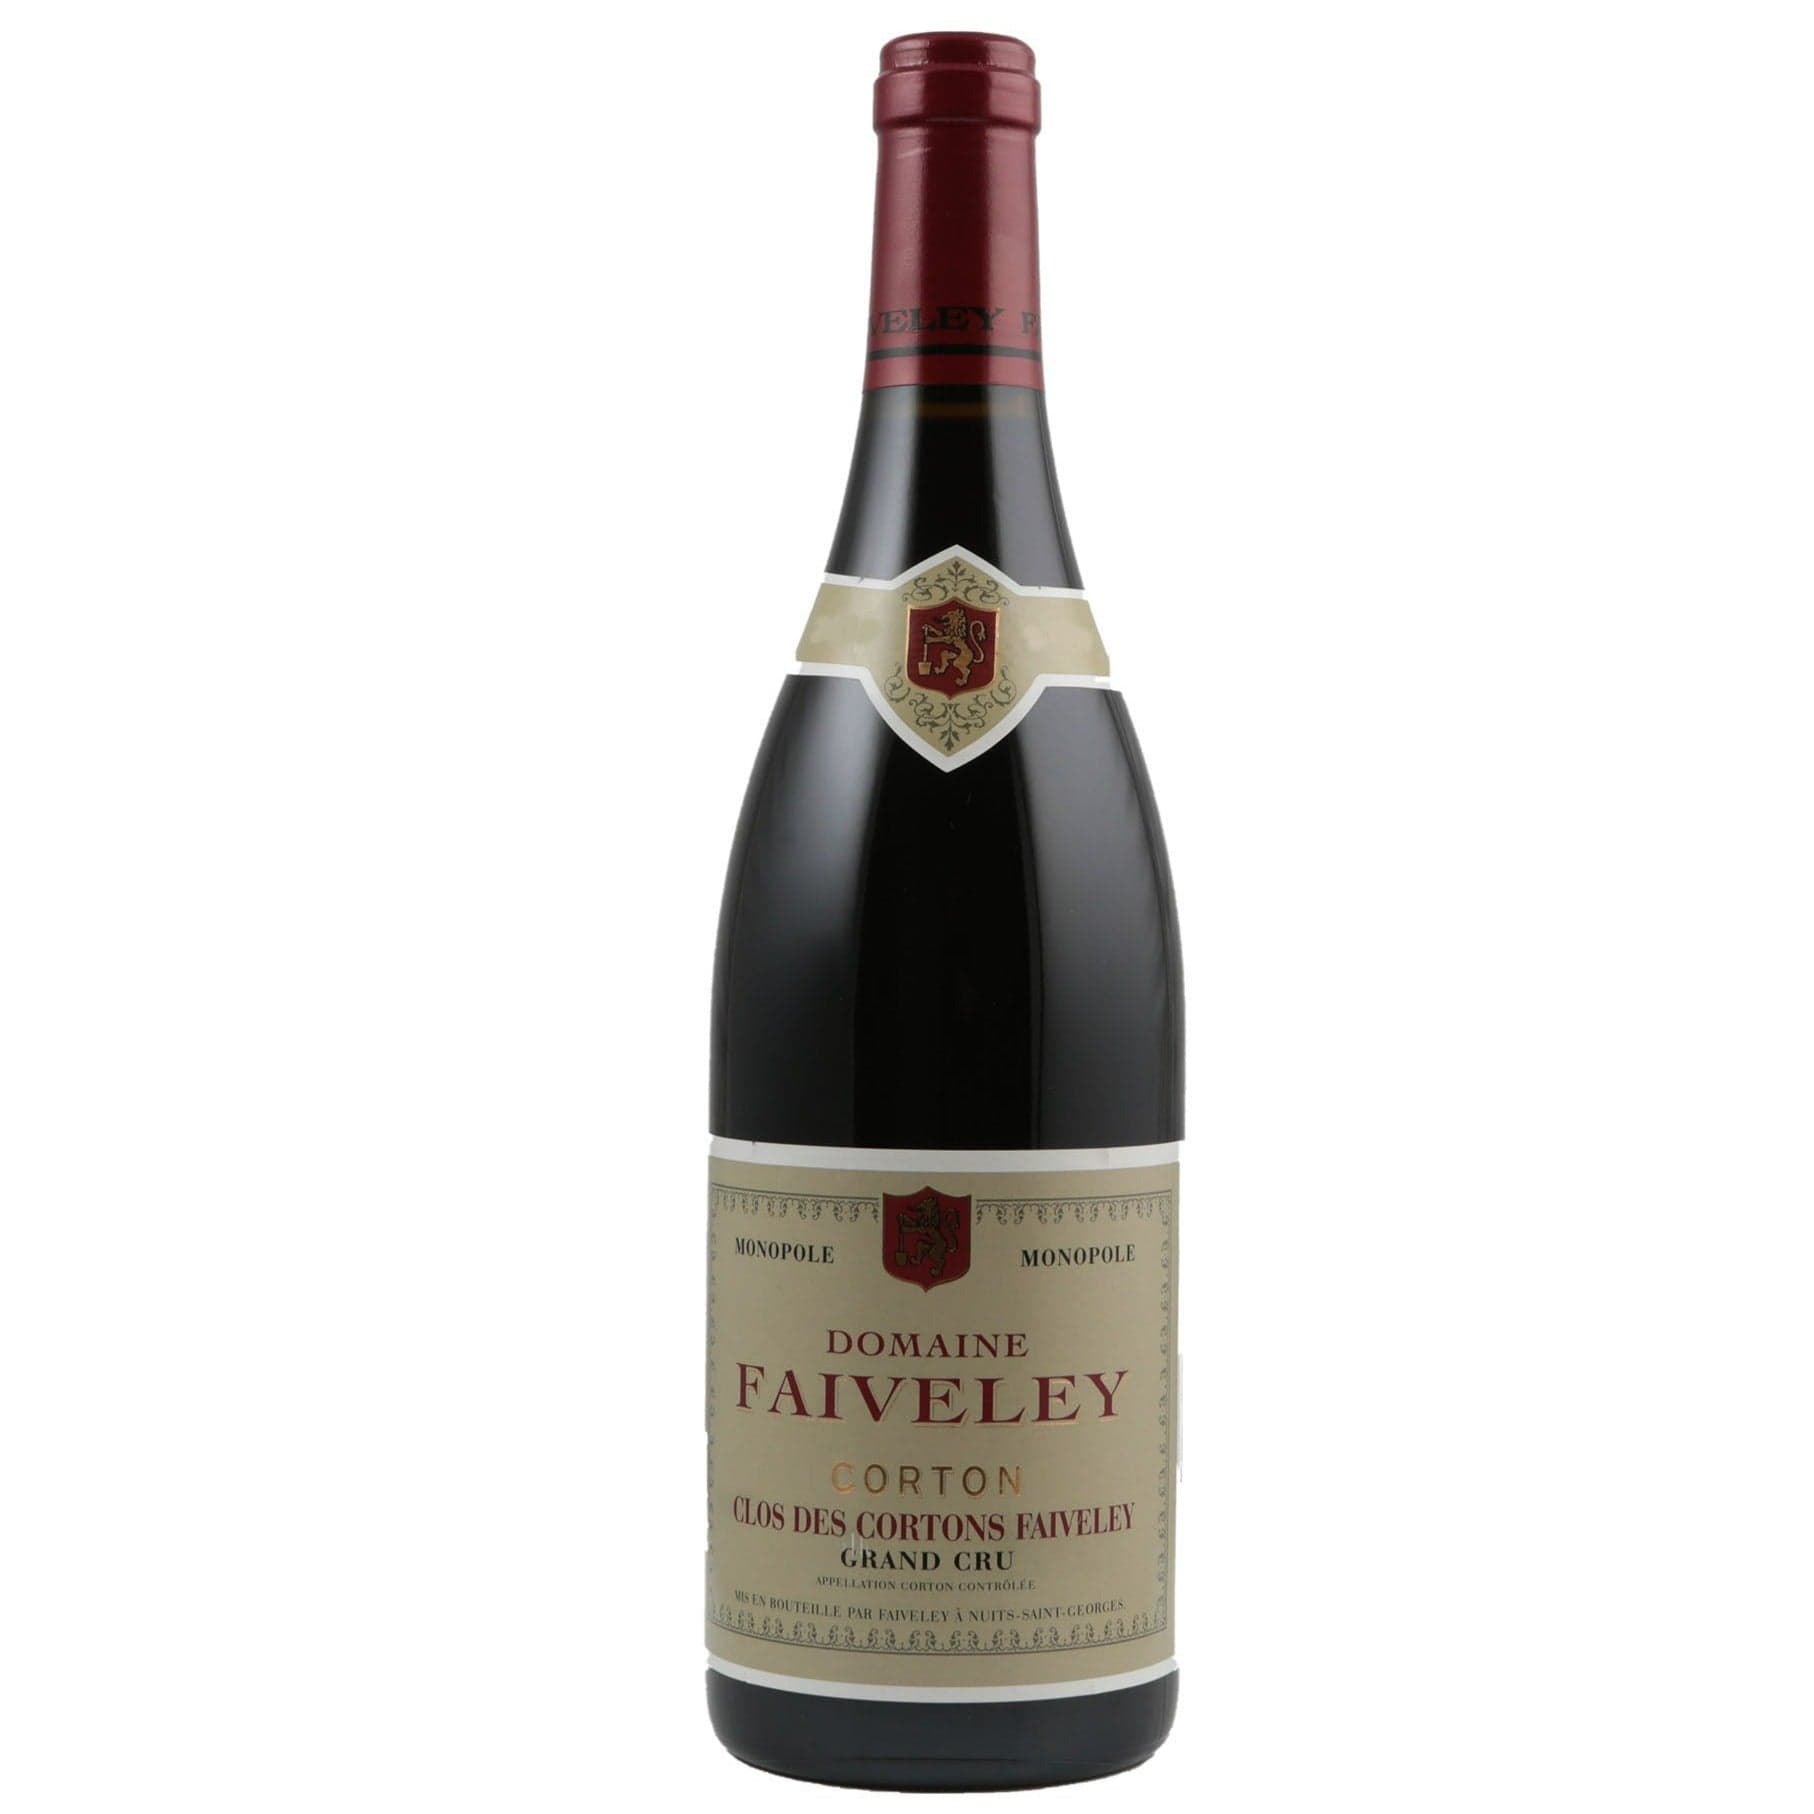 Single bottle of Red wine Dom. Faiveley, Clos des Cortons Monopole Grand Cru, Corton Rouge, 2010 100% Pinor Noir